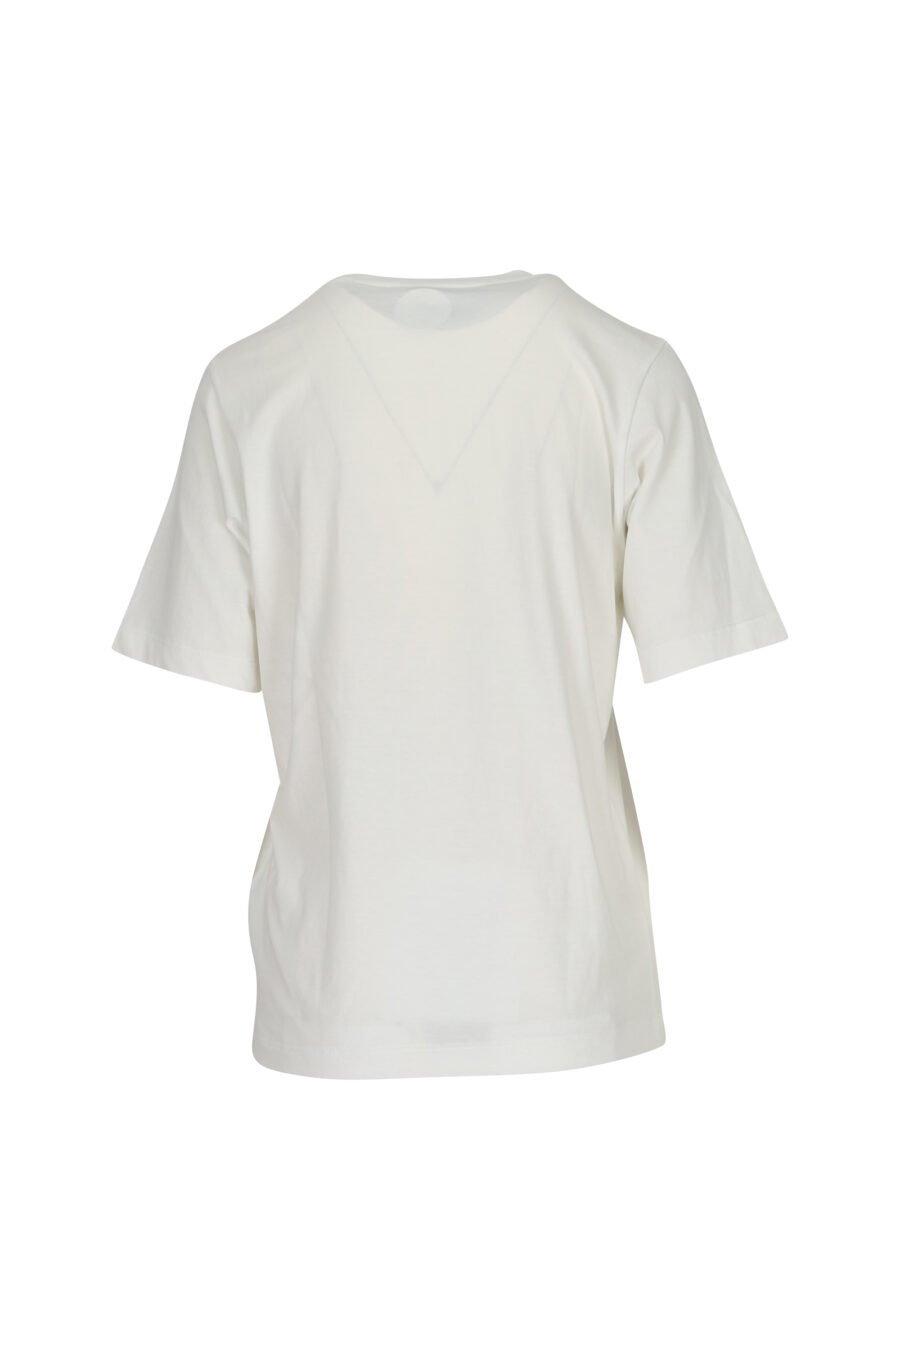 Camiseta blanca "oversize" con maxilogo "icon darling" - 8054148405847 1